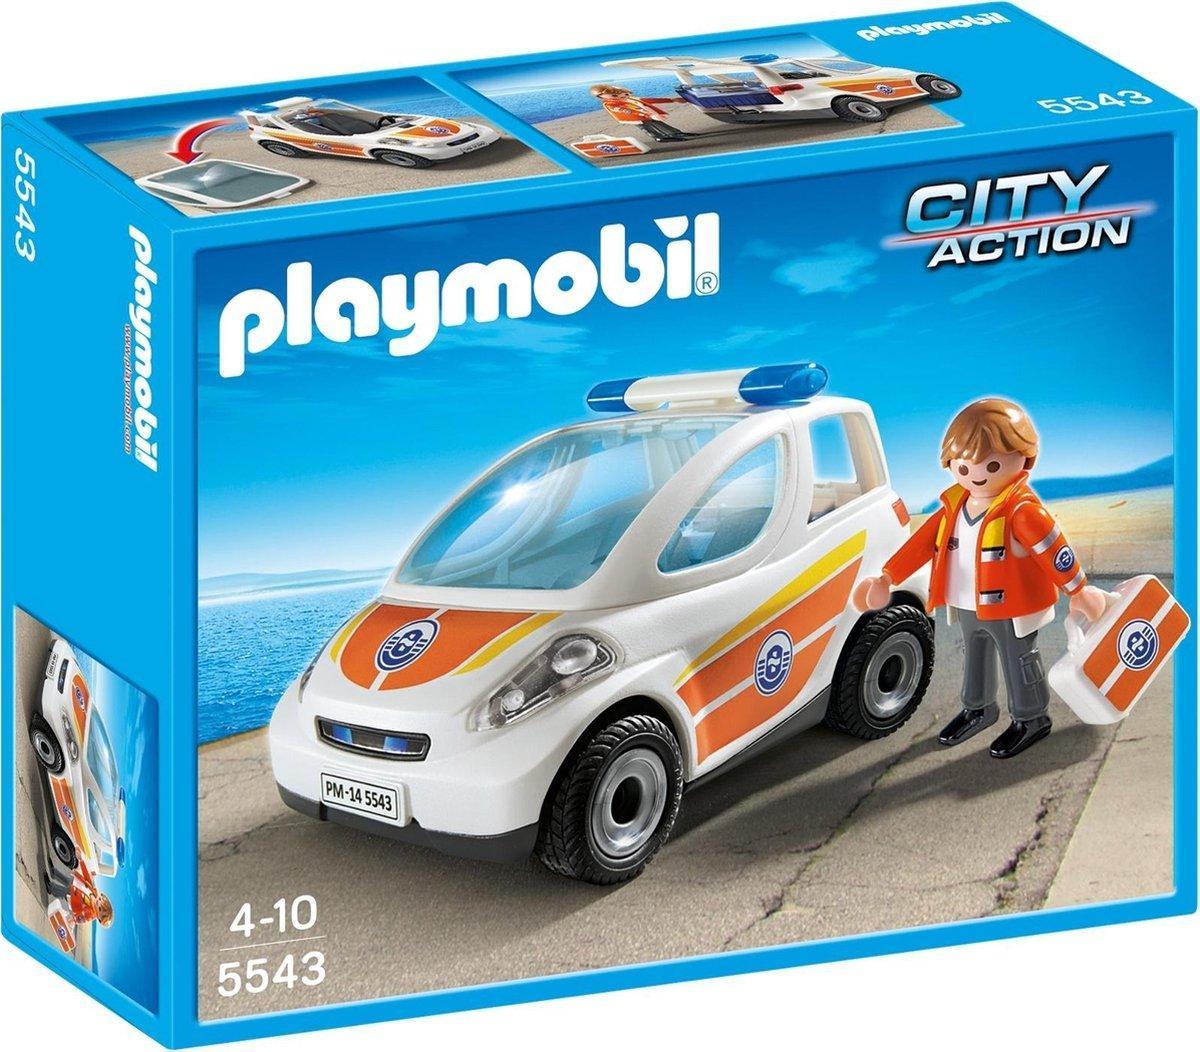 Playmobil Eerste hulp ambulance met broeder 5543 City Action PLAYMOBIL CITY ACTION @ 2TTOYS PLAYMOBIL €. 6.99